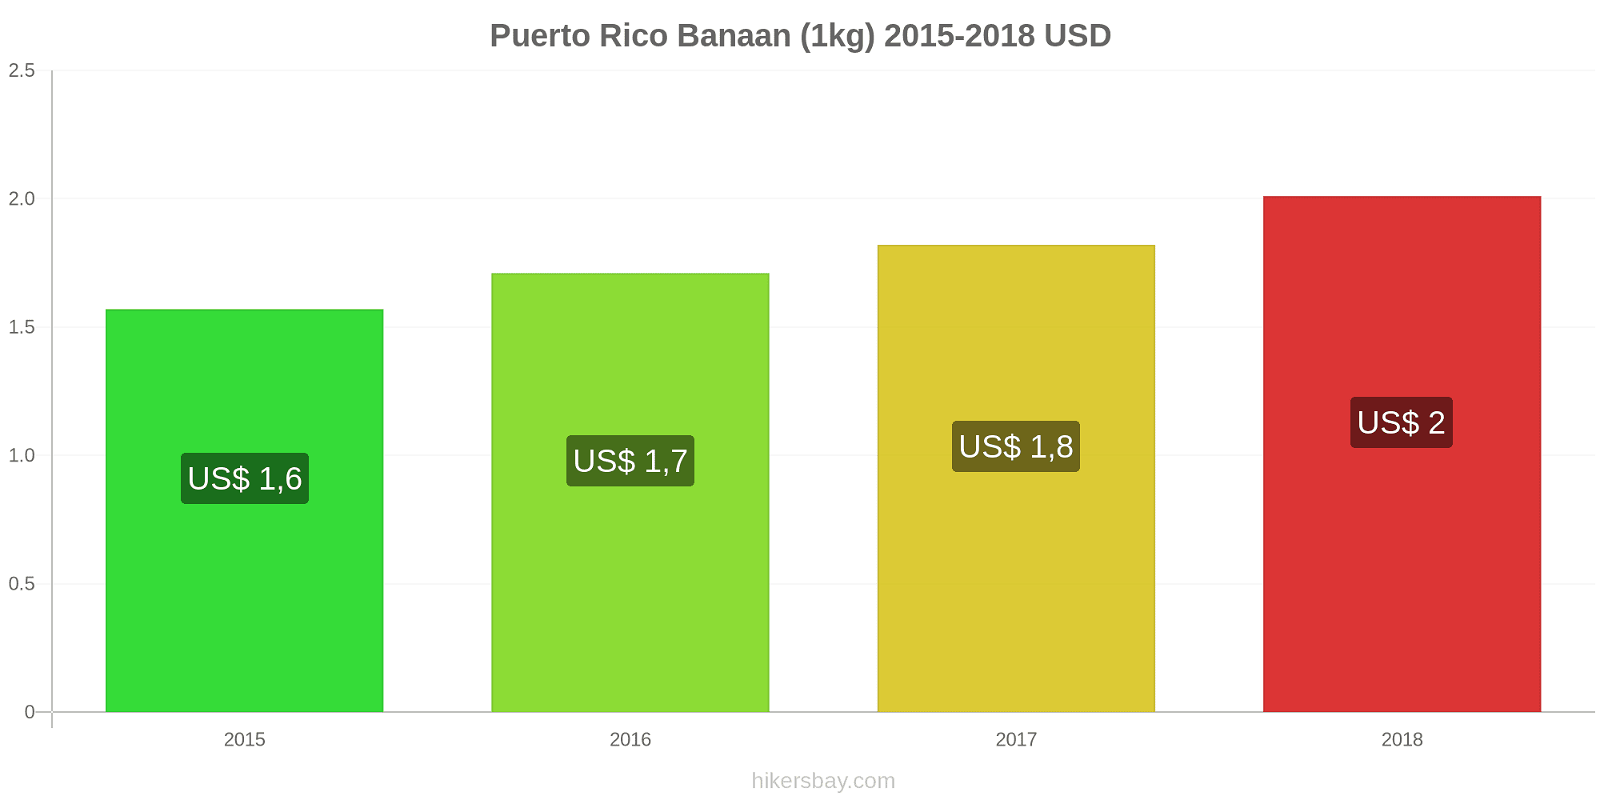 Puerto Rico prijswijzigingen Bananen (1kg) hikersbay.com